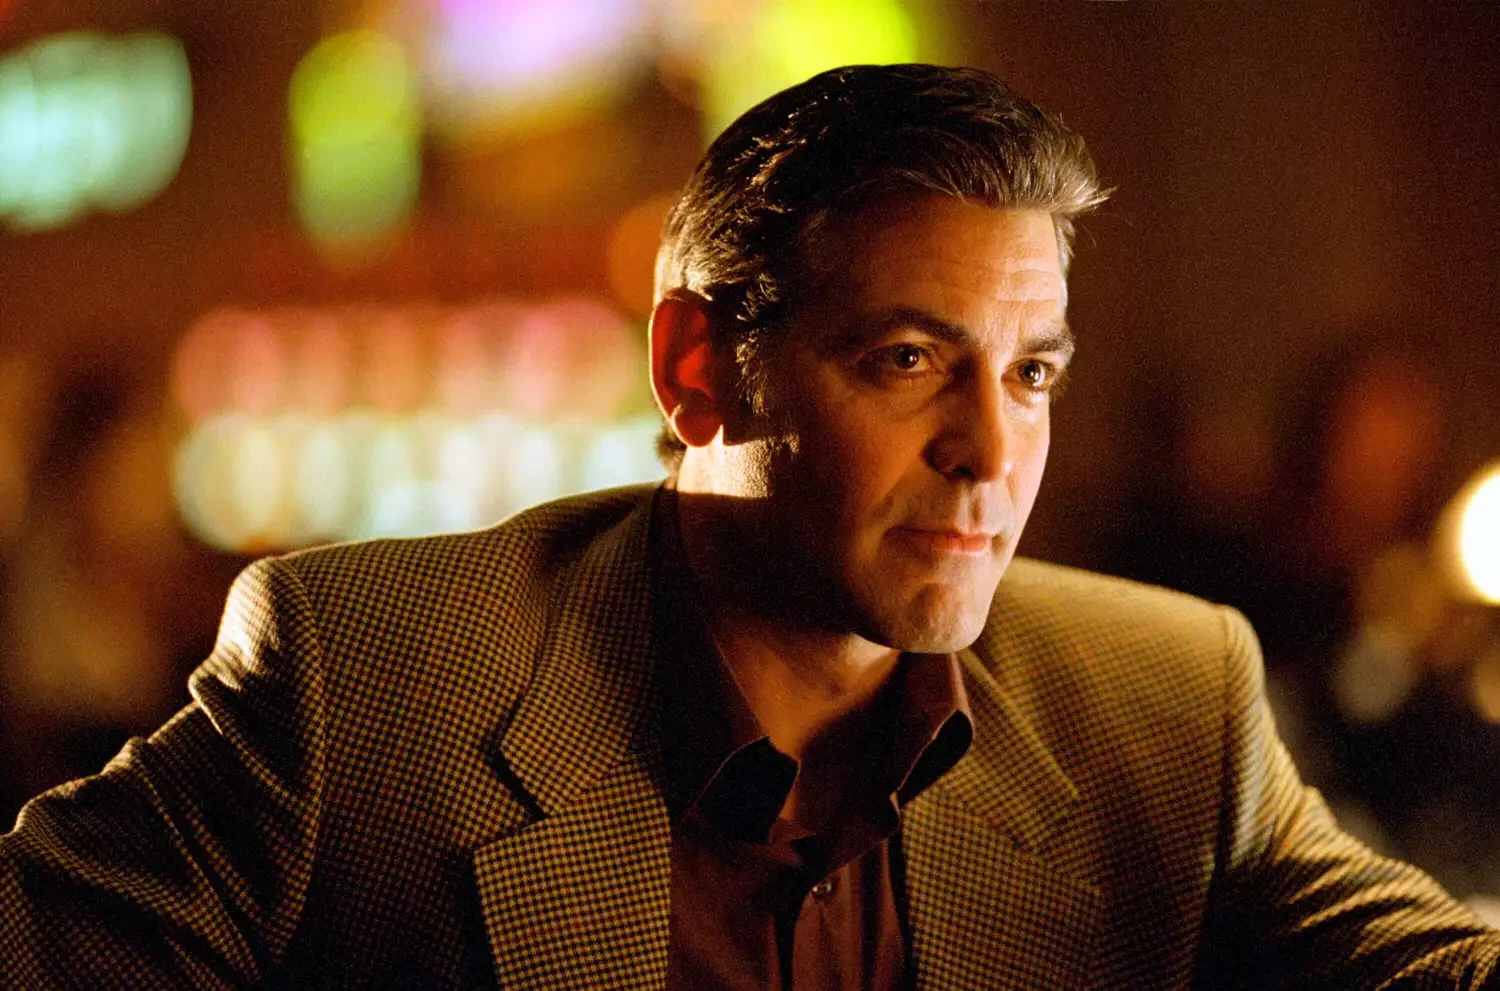 George Clooney as Danny Ocean